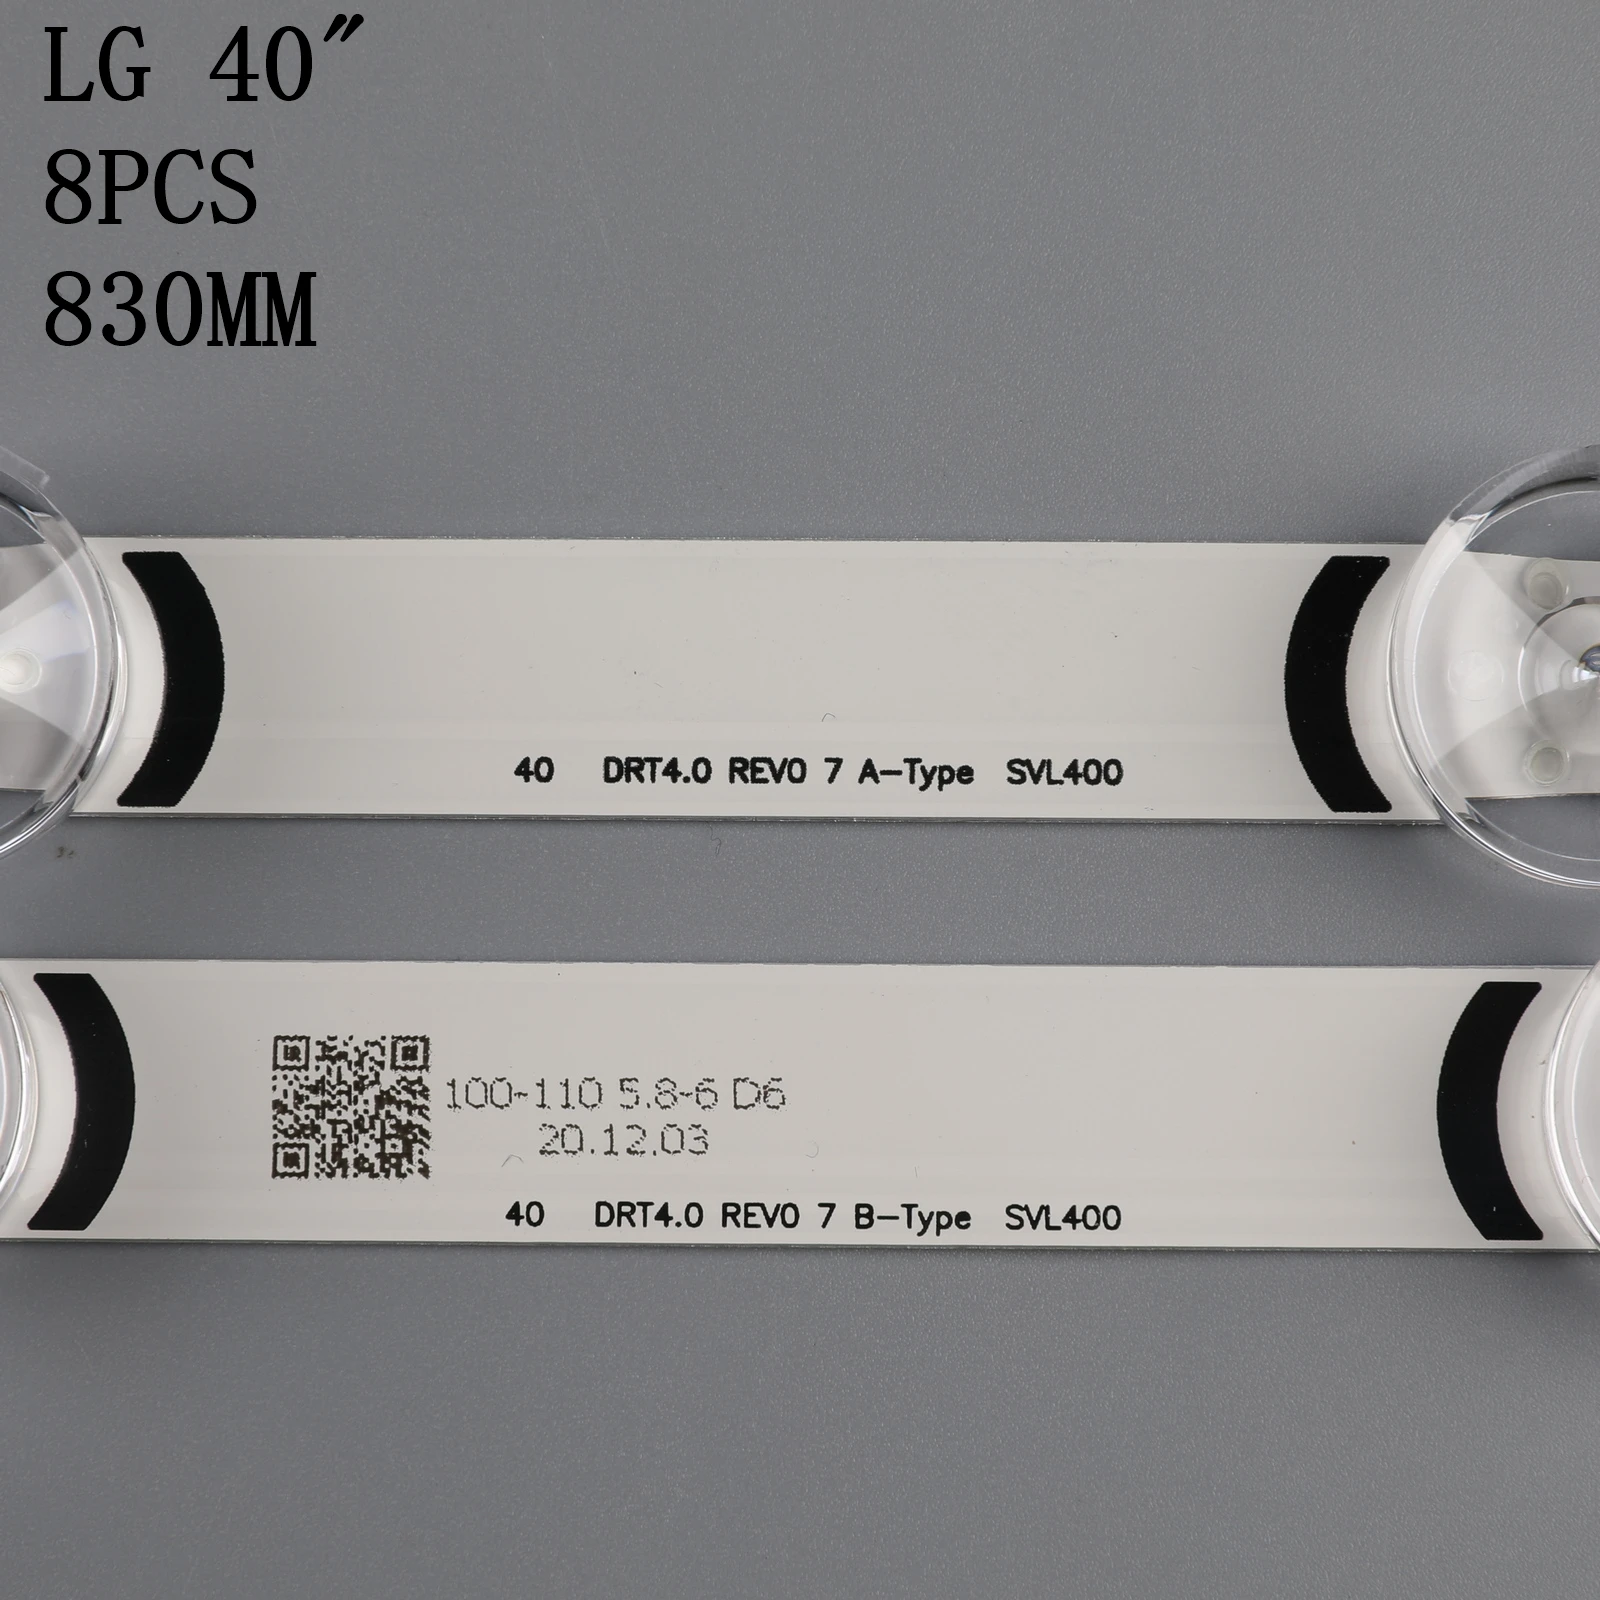 Проводная лампа для LG 40 DRT4.0 REV0 7 A/B-Tipo SVL400 6916L-0884A 6916L-0885A 40LF630V 40LX560H 40LH5300 40LH5700 40LF570V от AliExpress WW